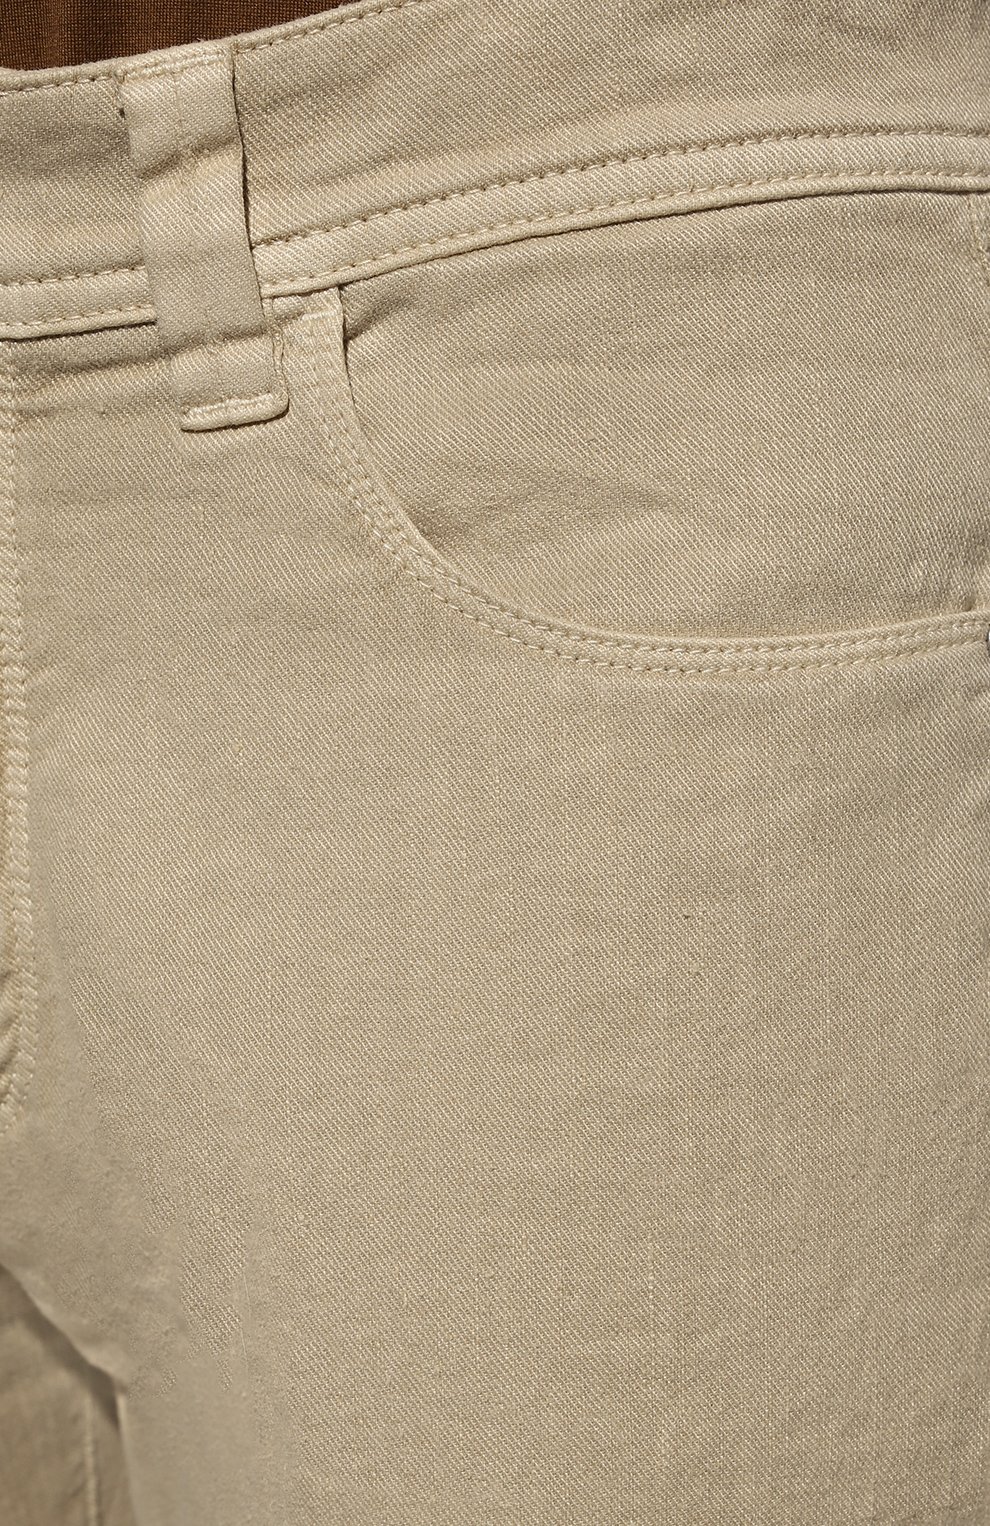 Мужские брюки изо льна и хлопка LORO PIANA светло-бежевого цвета, арт. FAI1646 | Фото 5 (Длина (брюки, джинсы): Стандартные; Случай: Повседневный; Материал внешний: Хлопок, Лен; Стили: Кэжуэл)